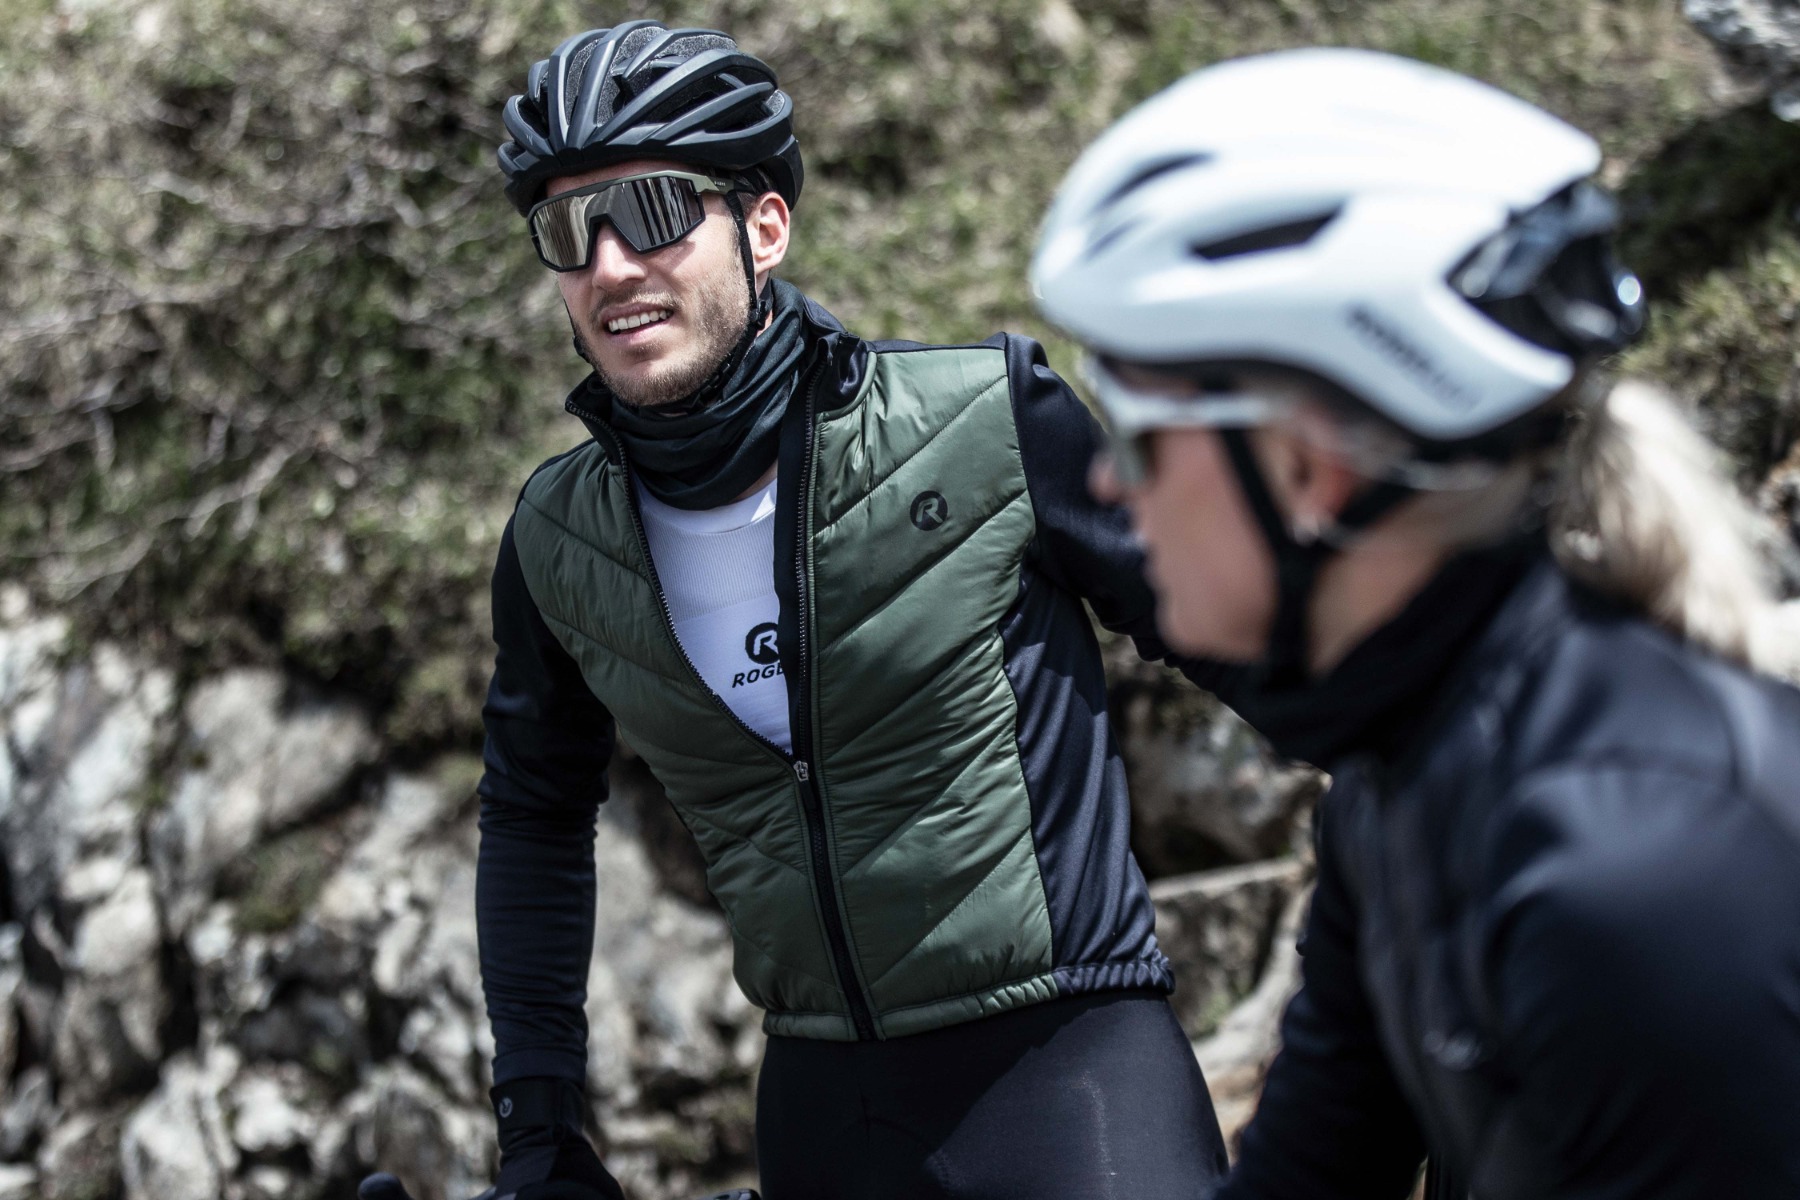 Comfortabele rit in Rogelli fietskleding en blijf warm tijdens koude dagen: Ondershirt, gewatteerde fietsjack en een fietssjaal.